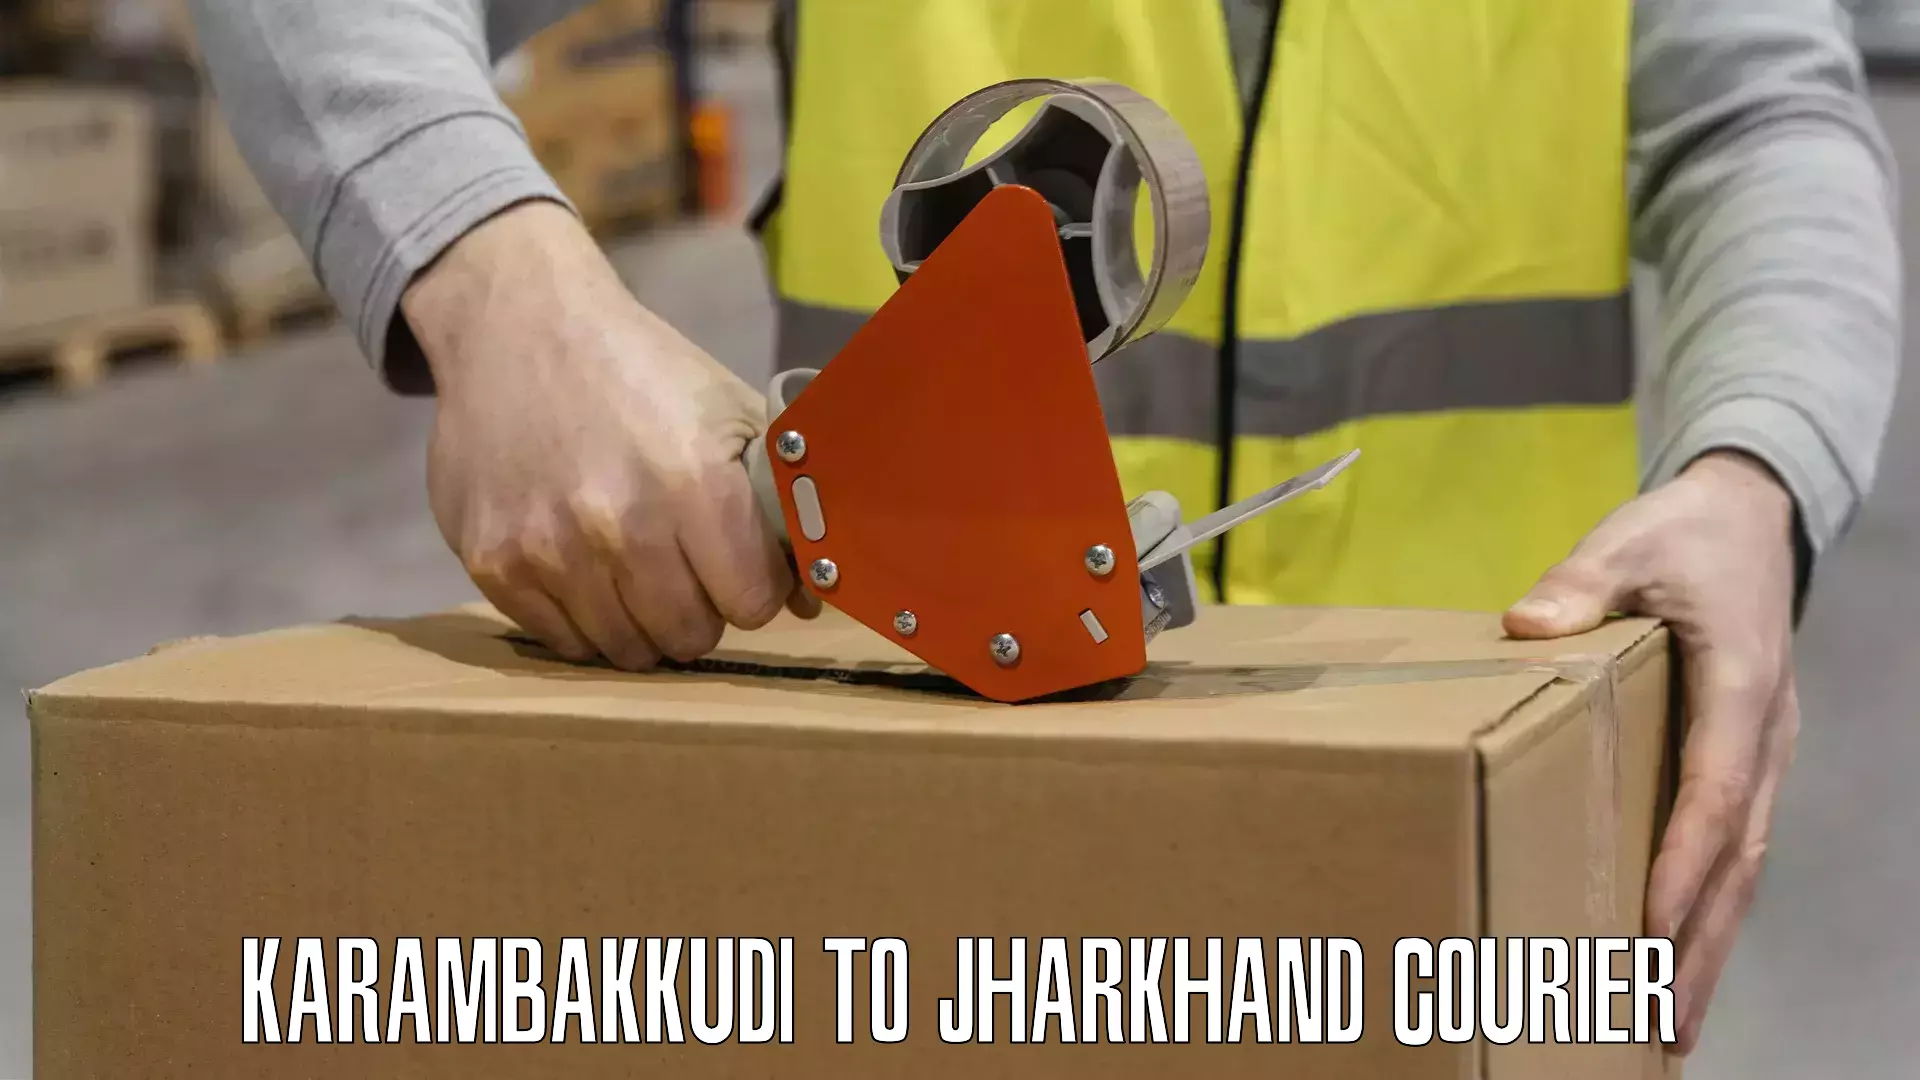 Tech-enabled shipping Karambakkudi to Poreyahat